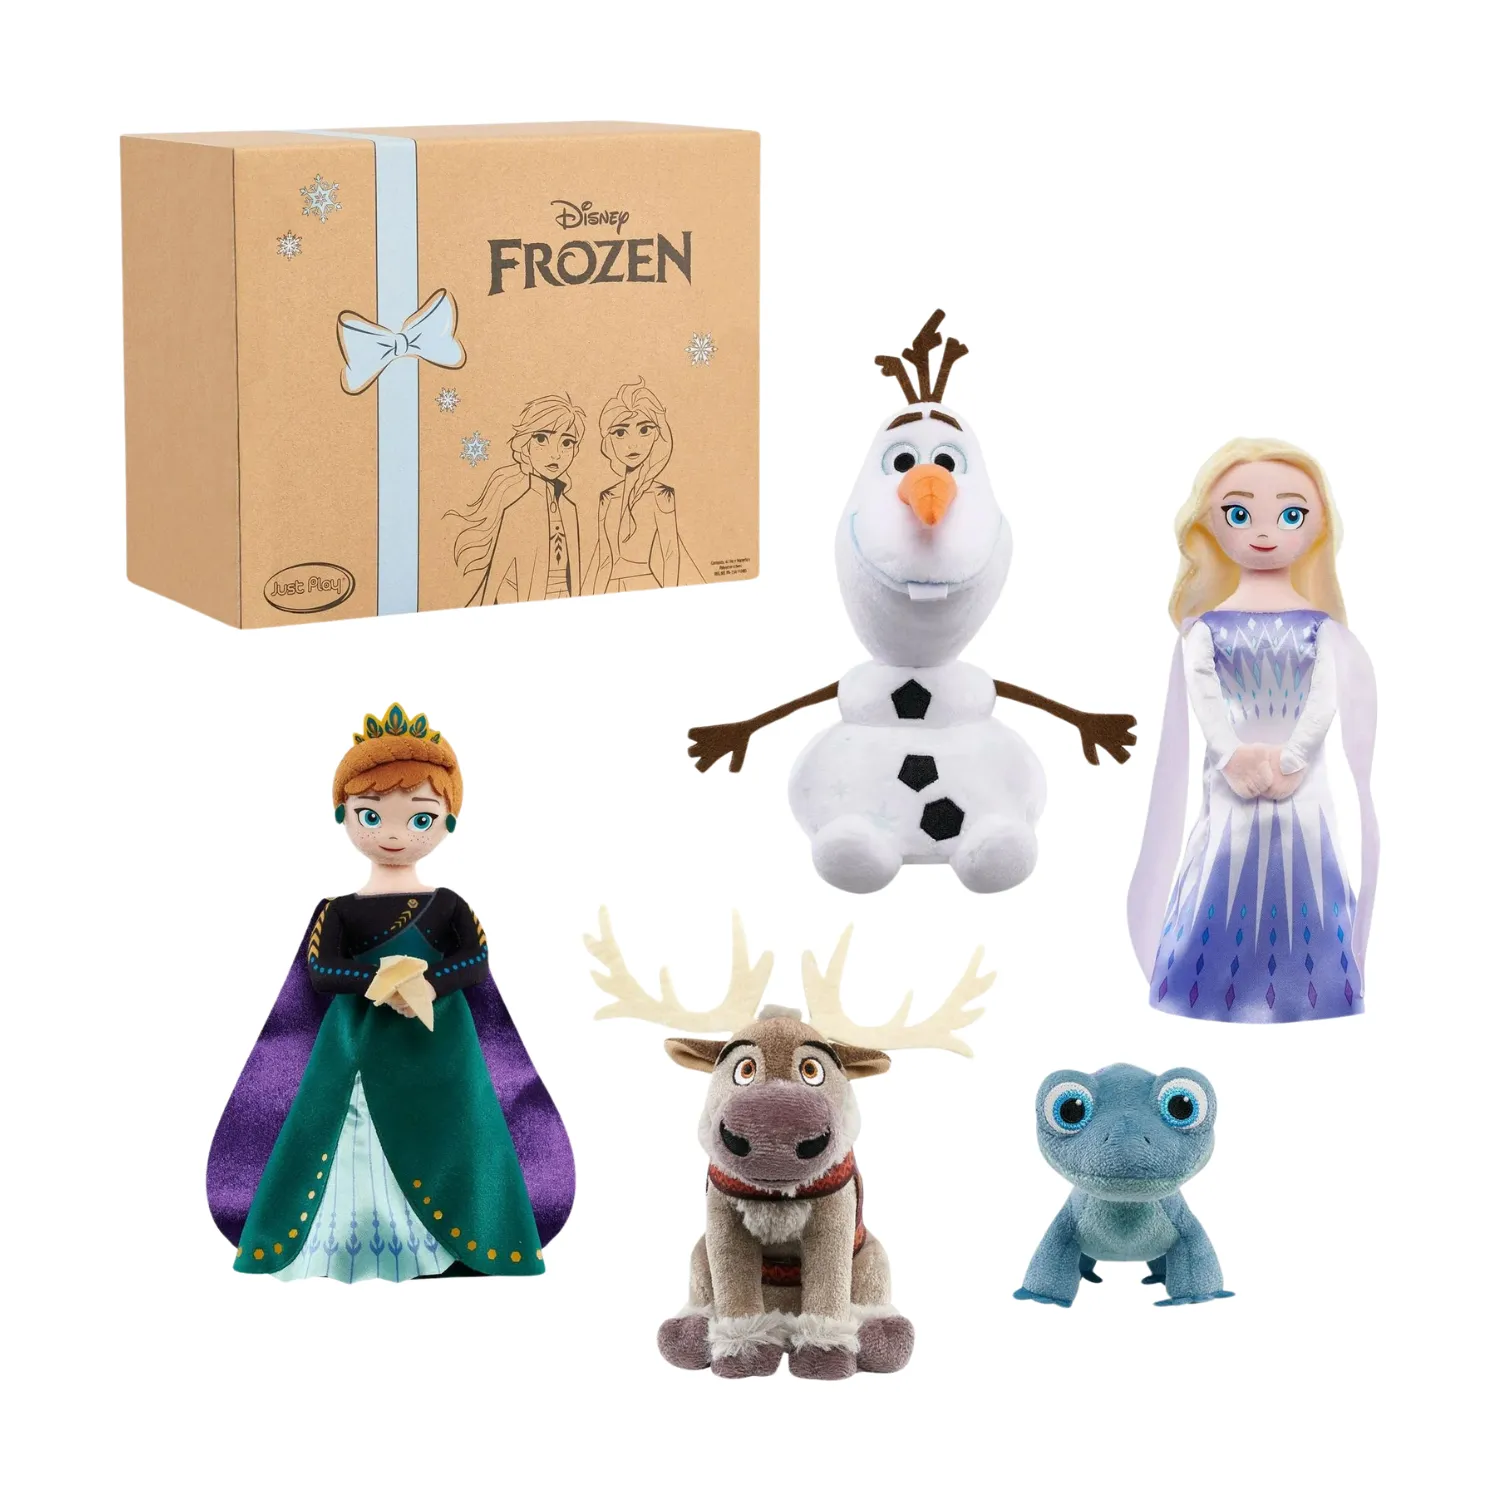 这张图片显示了五个来自冰雪奇缘II的角色的毛绒娃娃，包括Anna、Elsa、Olaf、一只蜥蜴和Sven。